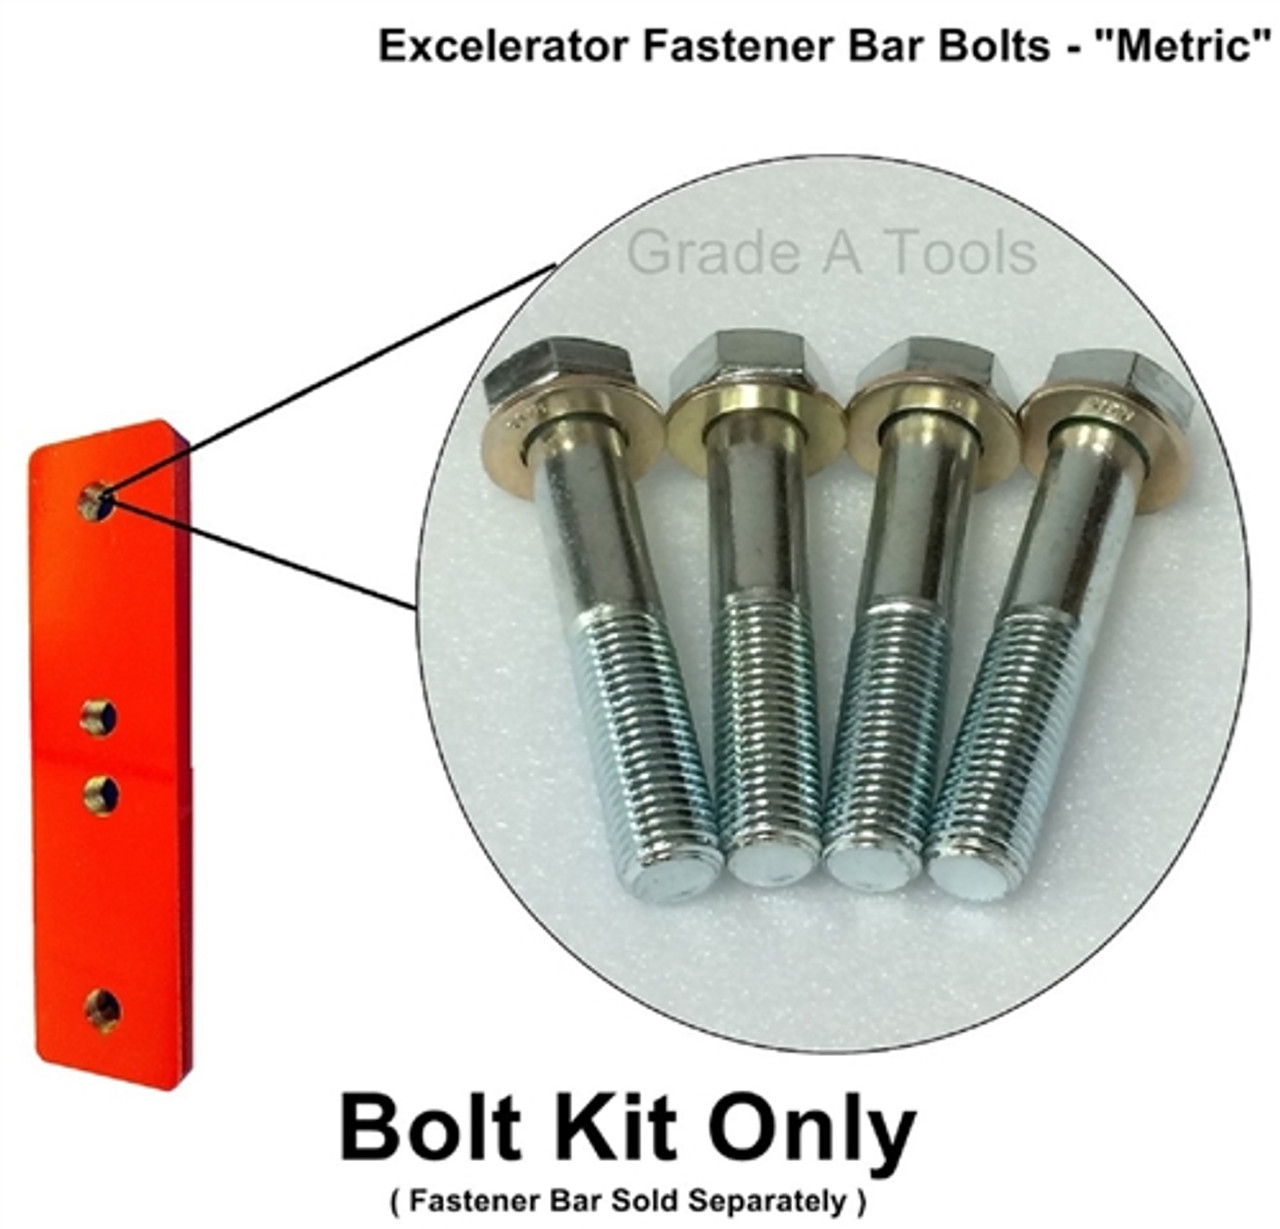 Fastener Bar Bolt Kit for Excelerator Metric